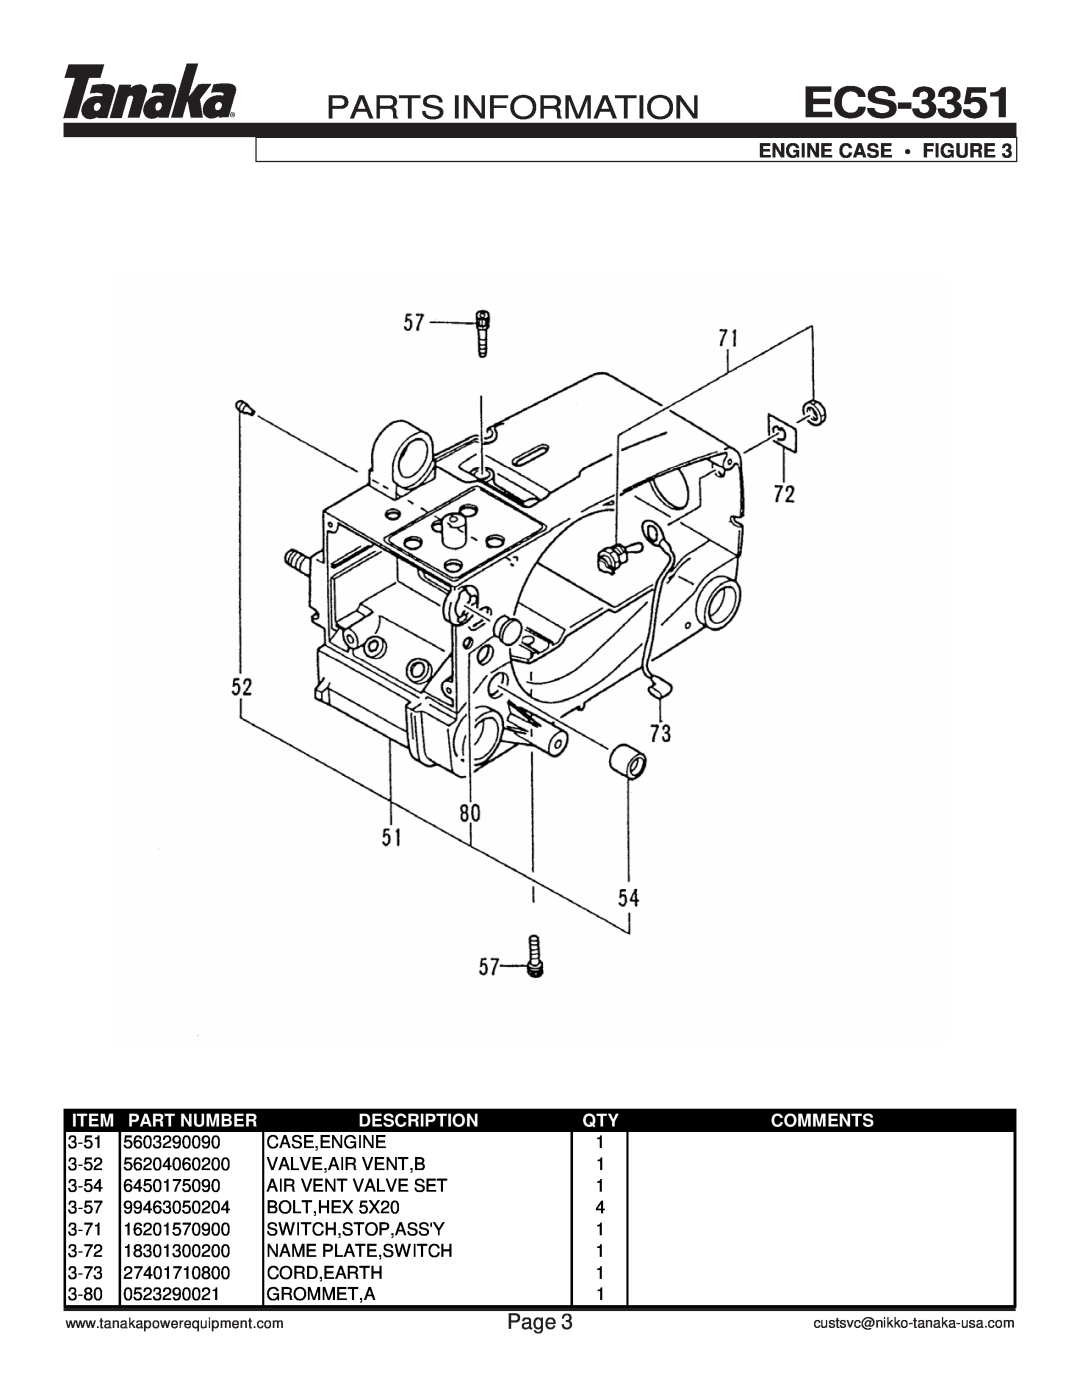 Tanaka ECS-3351/B manual Parts Information, Page, Engine Case Figure, Part Number, Description, Comments 